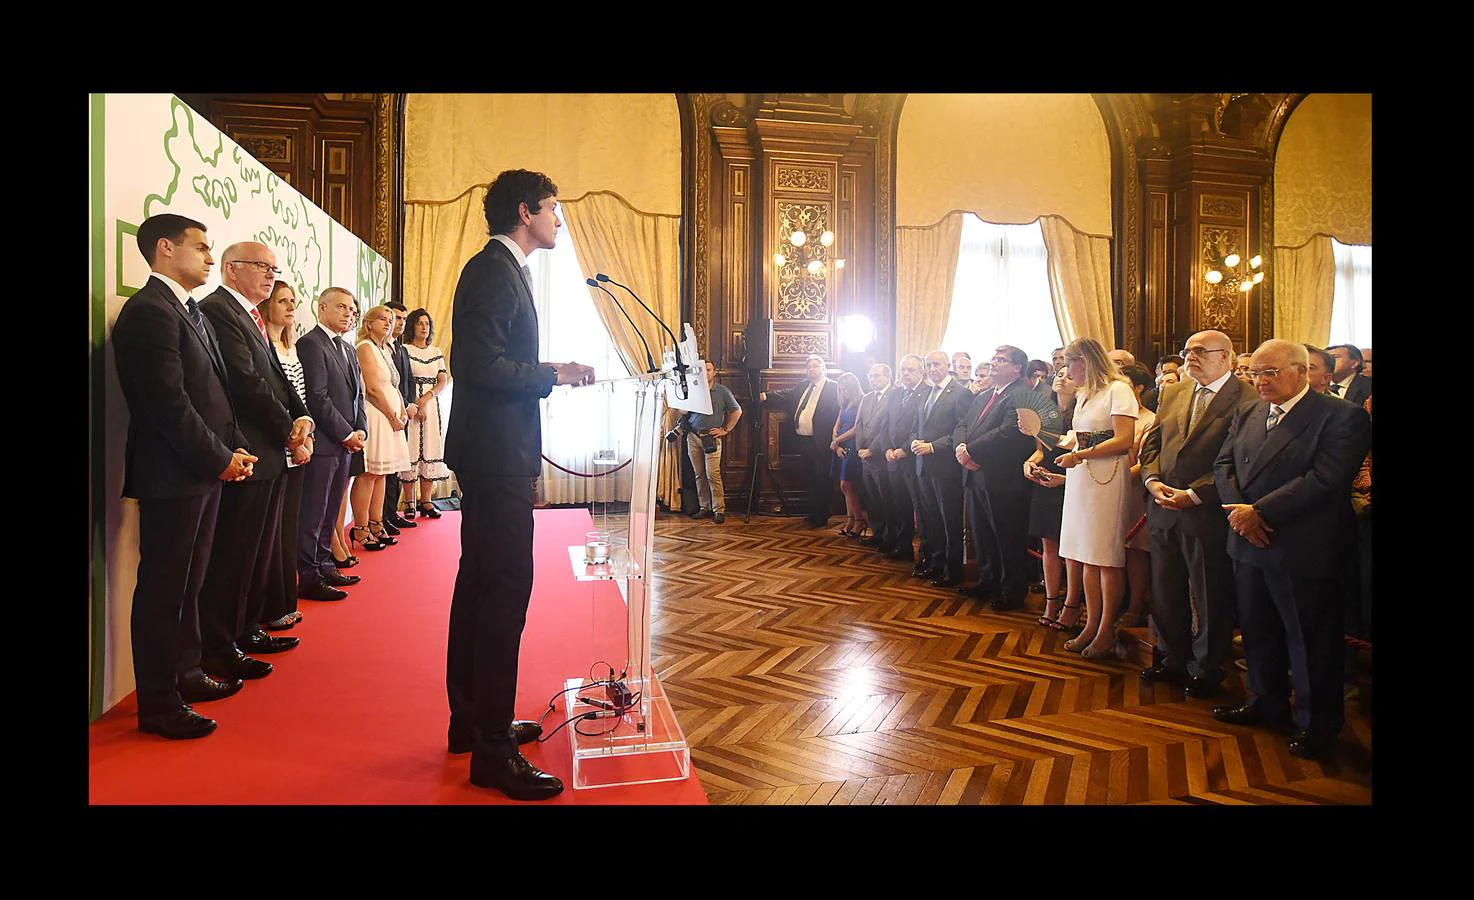 El diputado general de Bizkaia, Unai Rementeria, realiza su discurso ante los invitados.